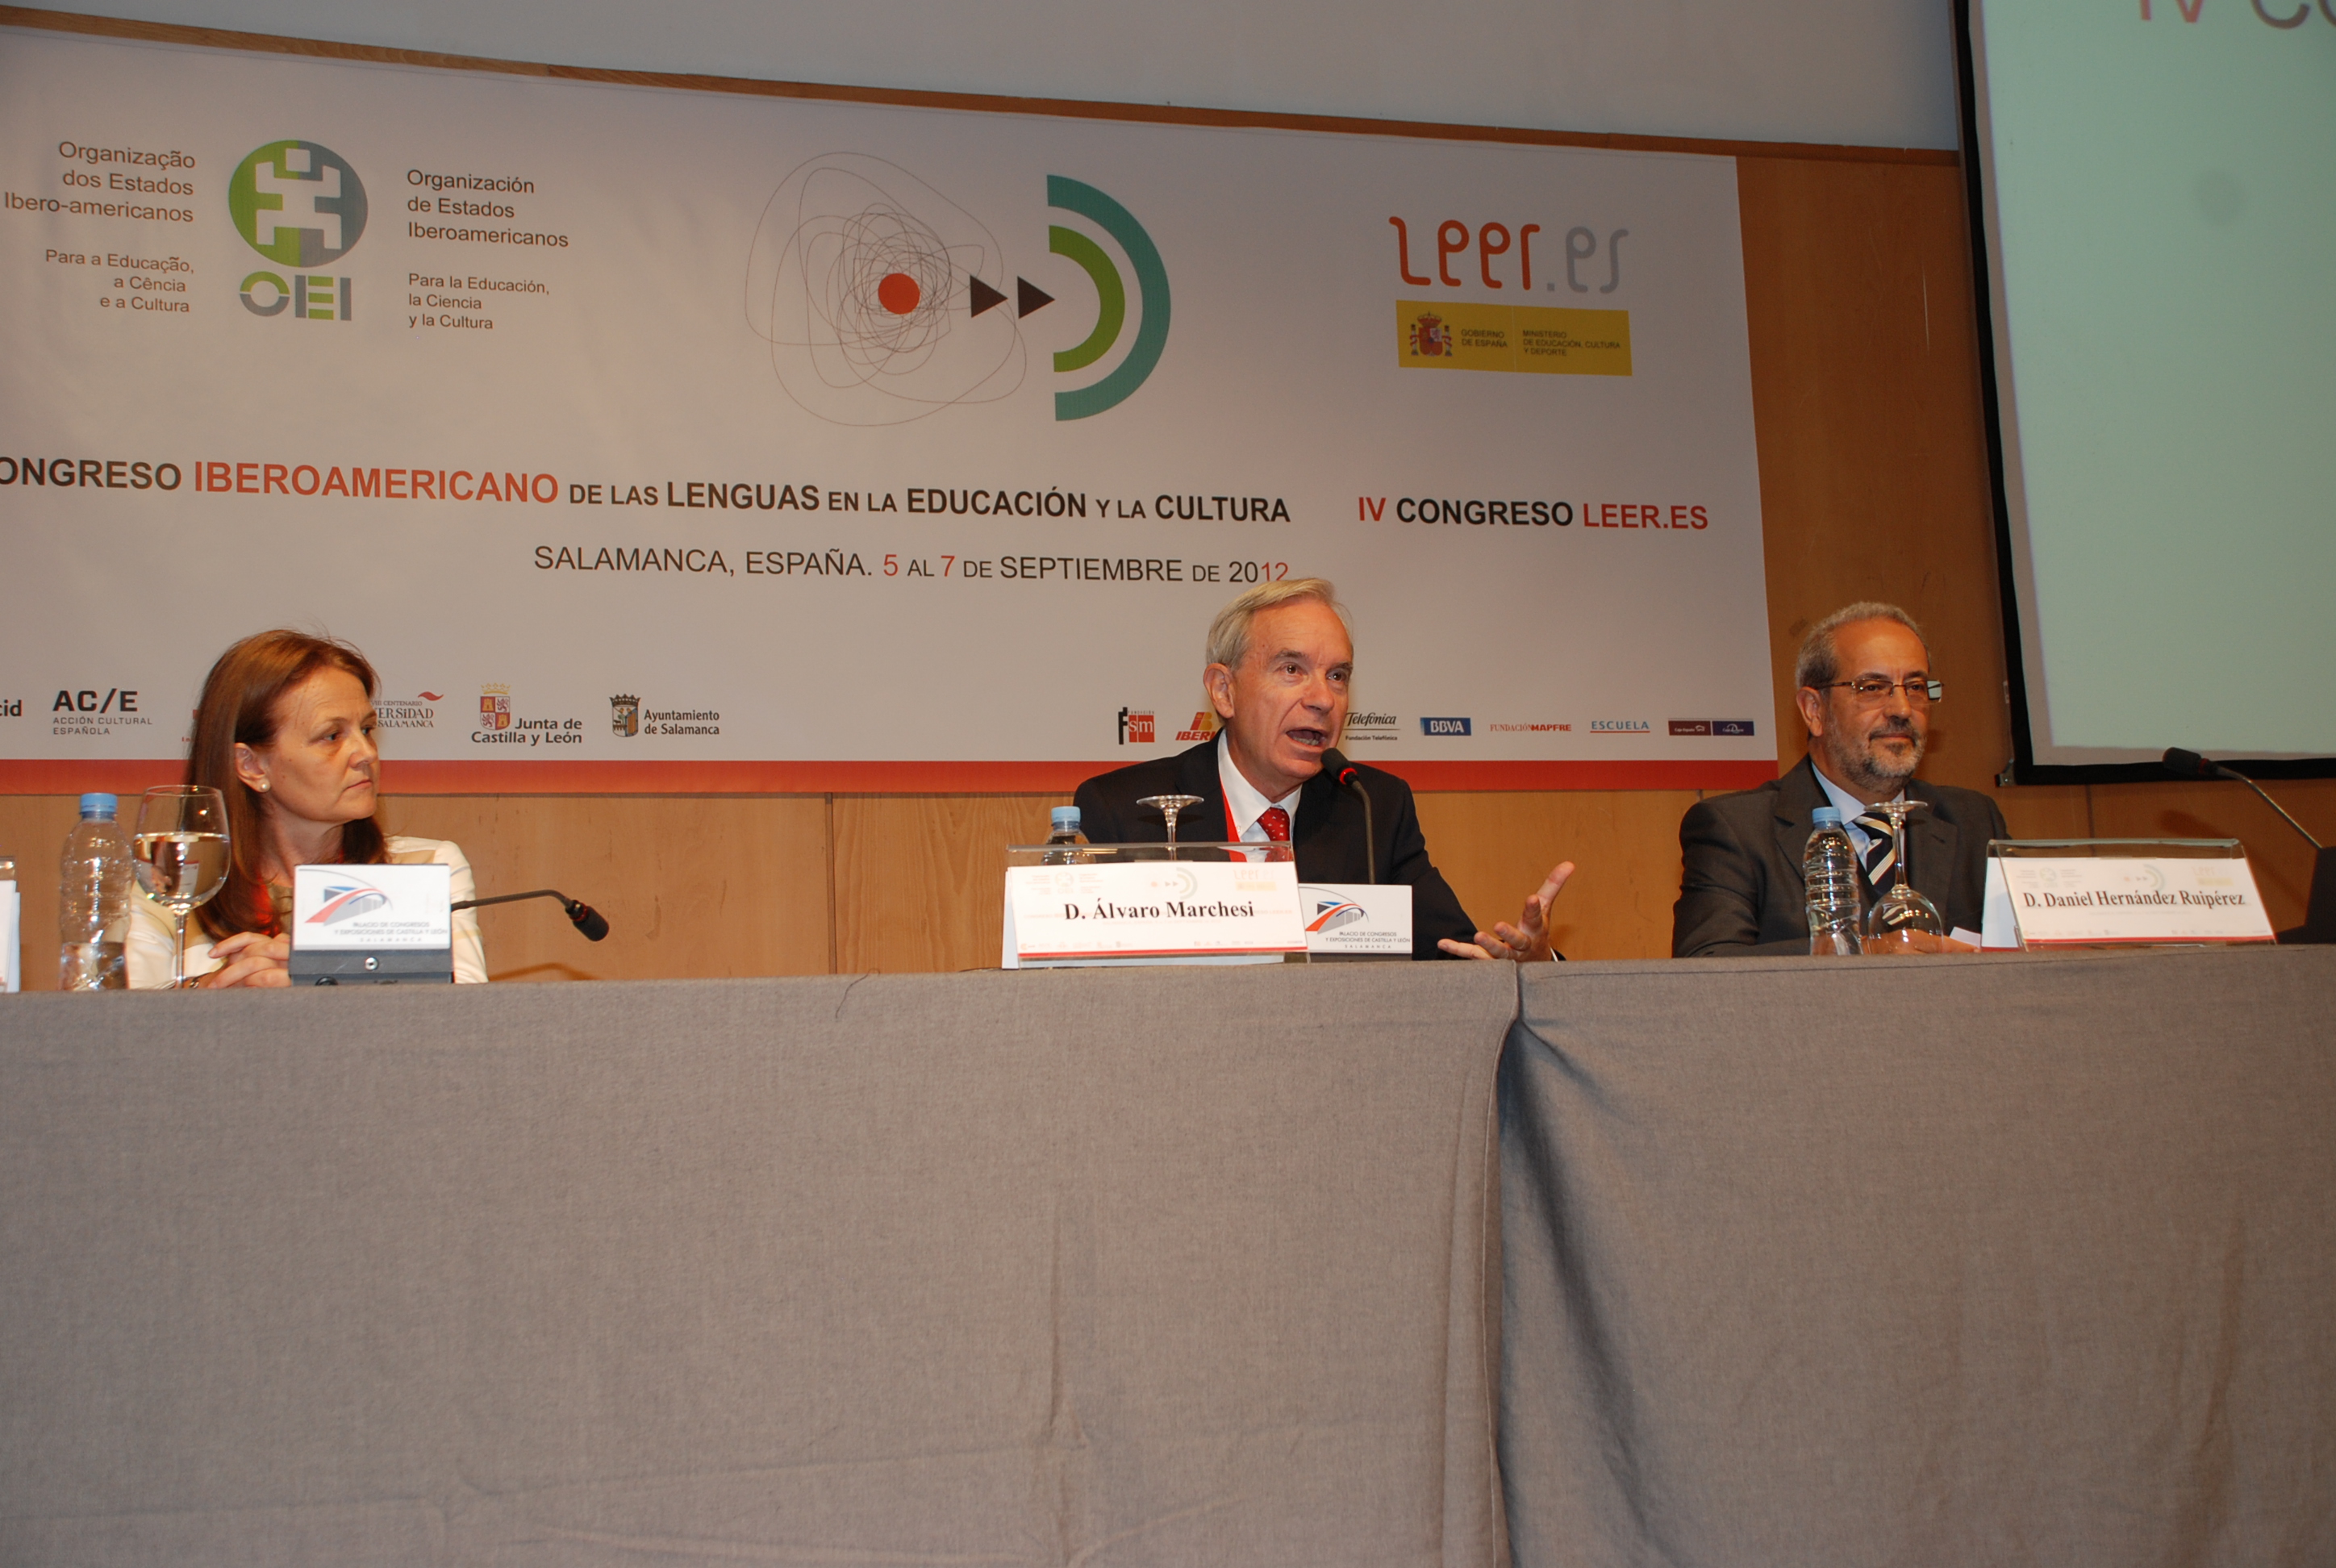 El rector da la bienvenida a los asistentes al Congreso Iberoamericano de las Lenguas en la Educación y en la Cultura